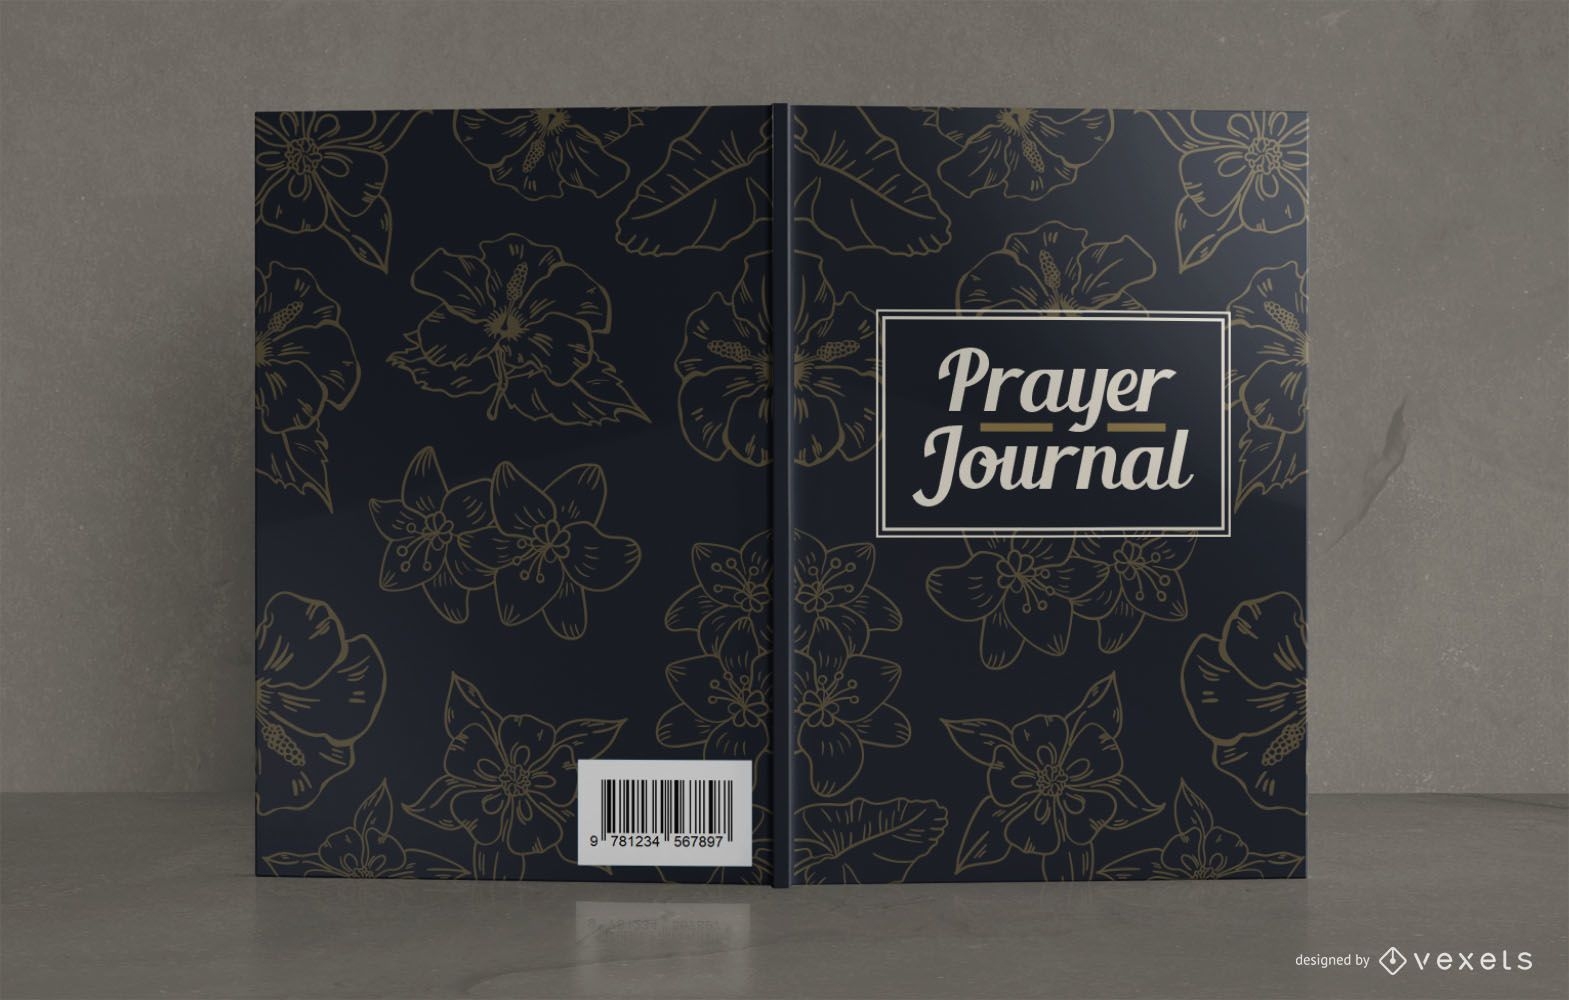 Bucheinbanddesign f?r Gebetstagebuch mit Blumenmuster